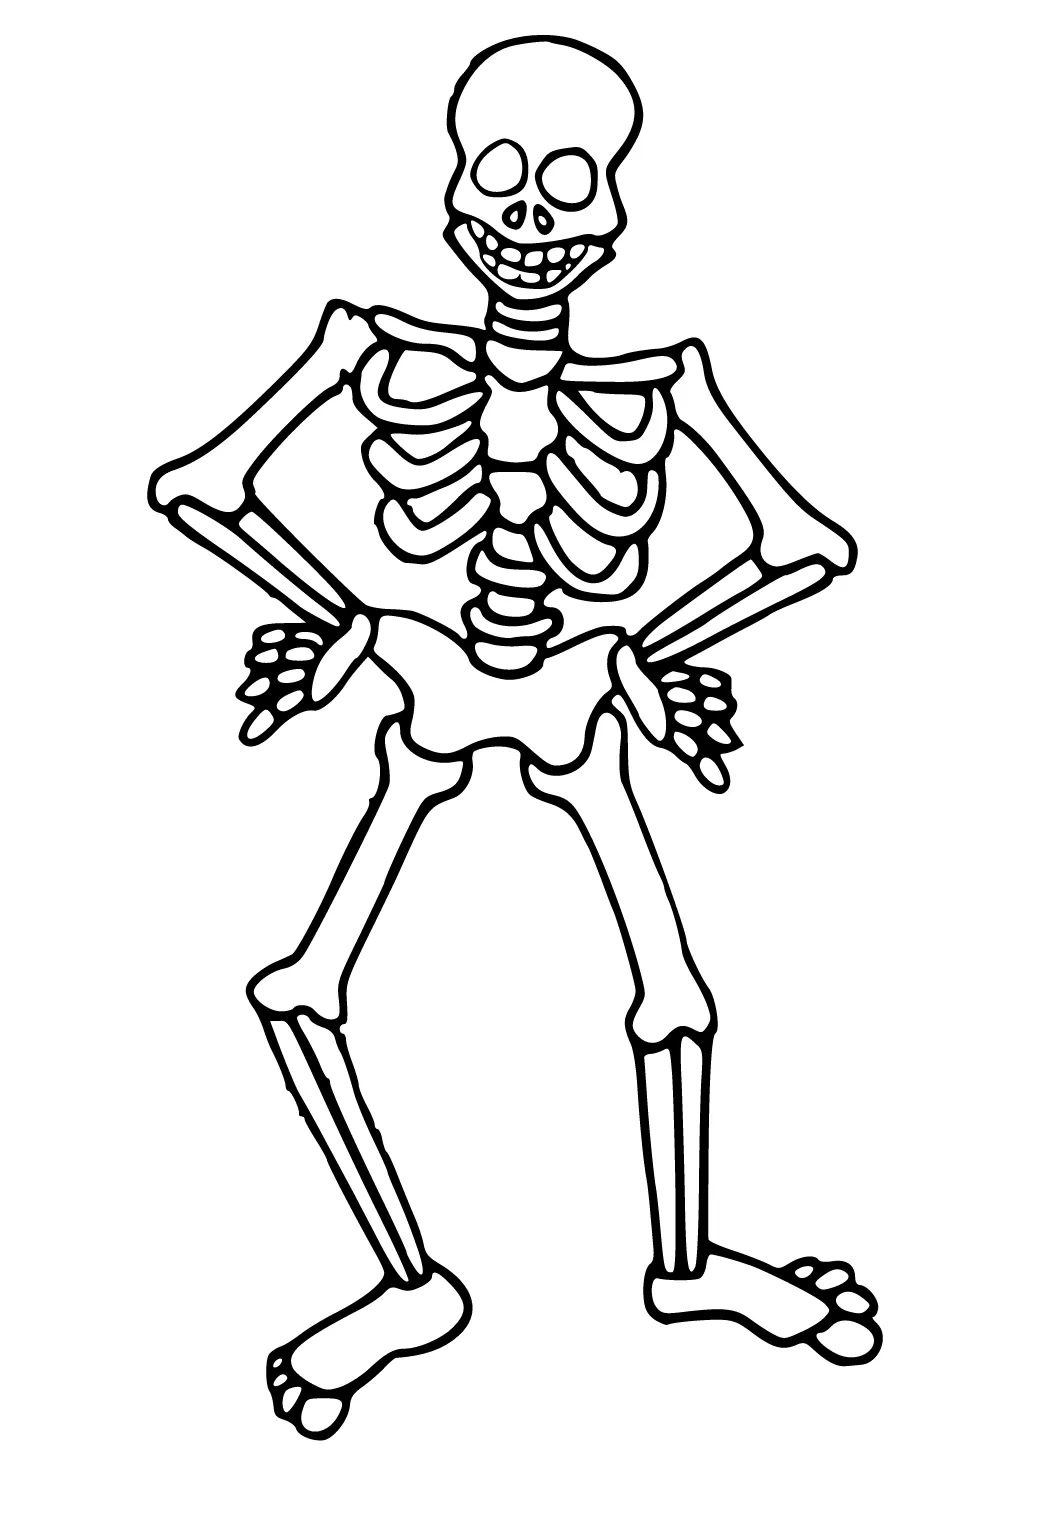 Dibujo e Imagen Esqueleto Bailar para Colorear y Imprimir Gratis para  Adultos y Niños - Lystok.com